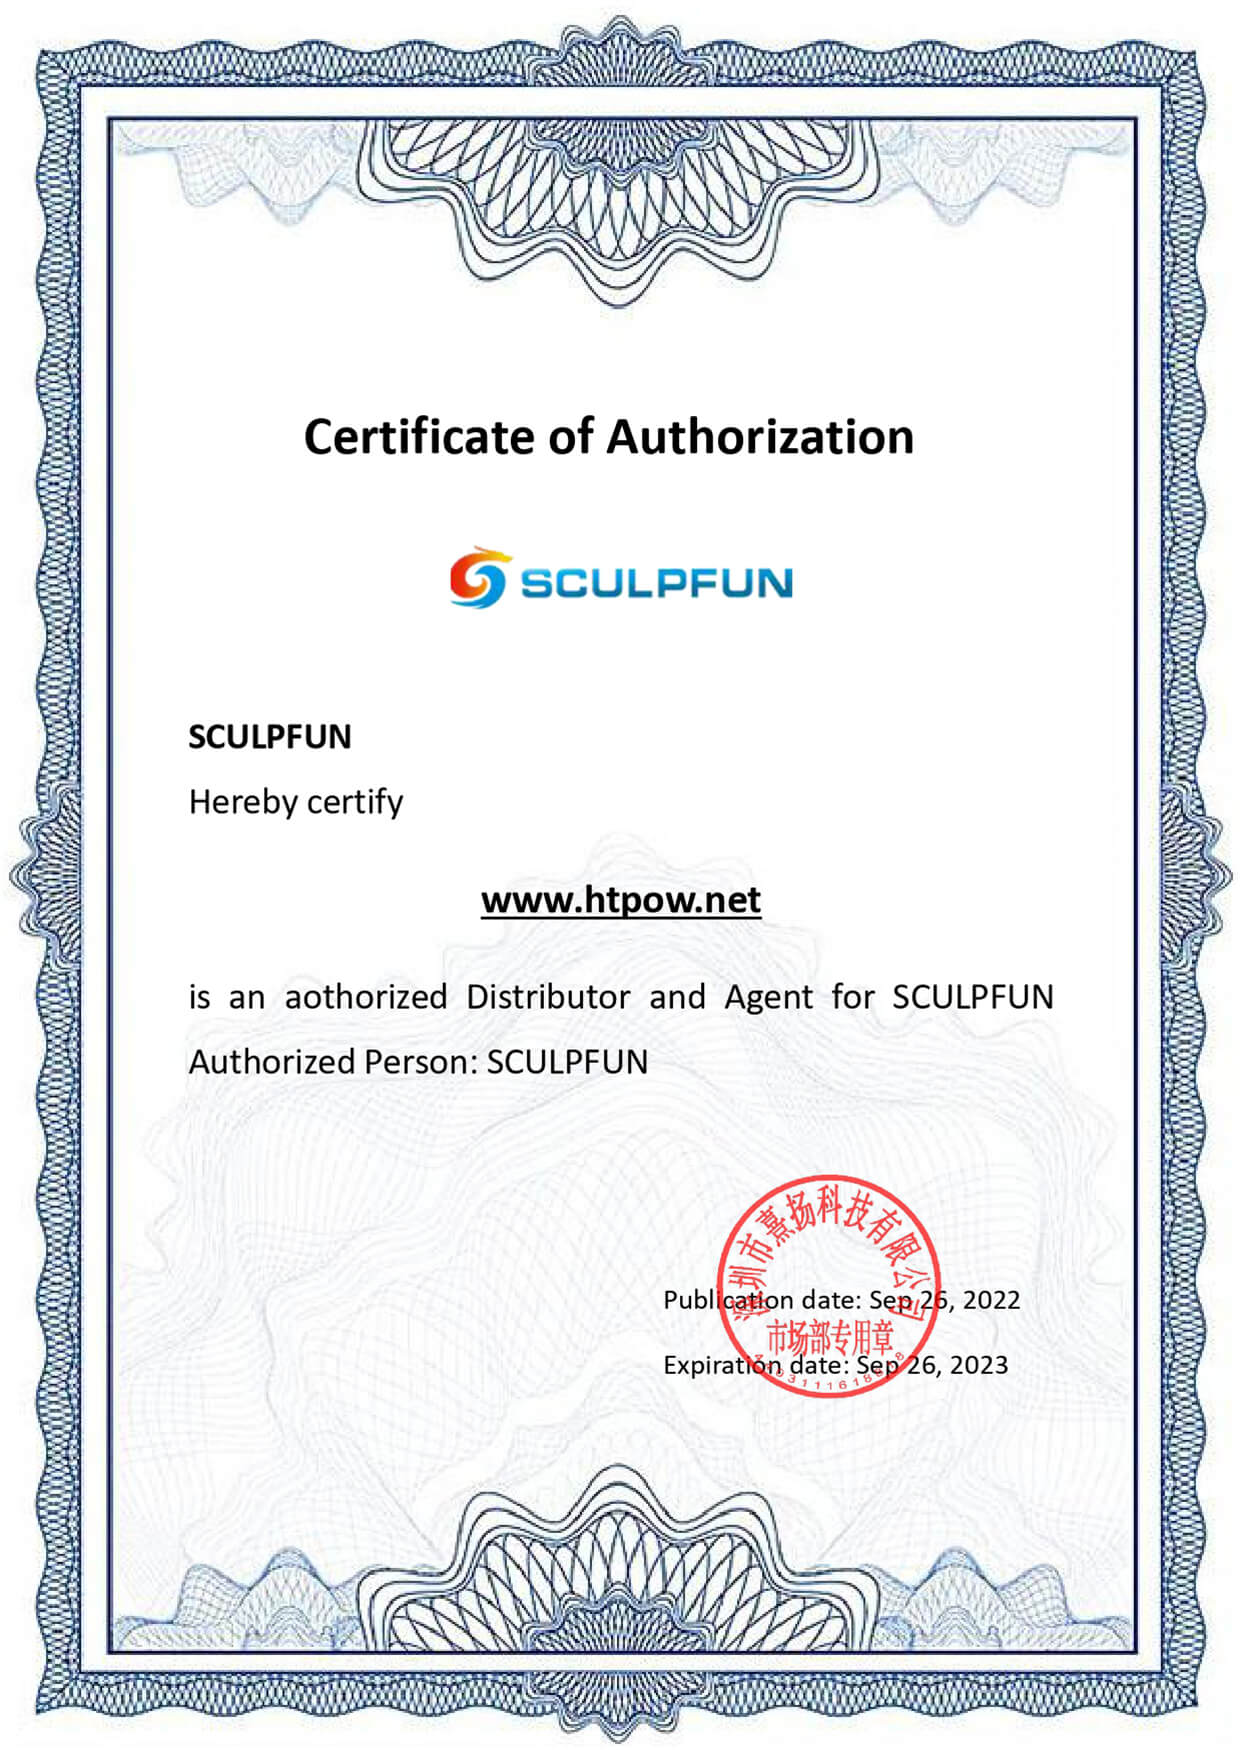 sculpfun certificate of authorization